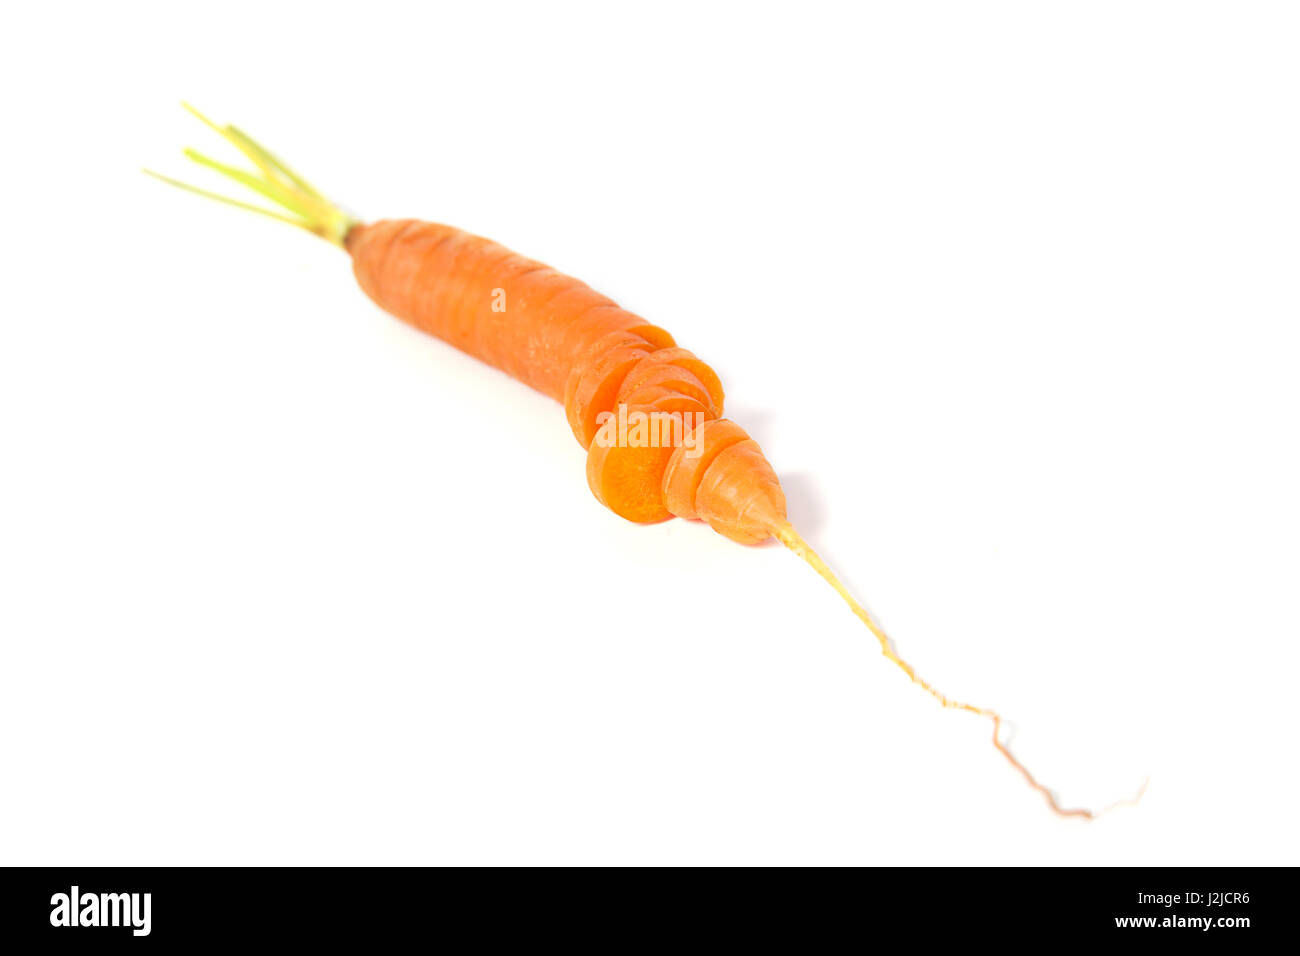 Le jus de carotte frais sur le fond blanc Banque D'Images